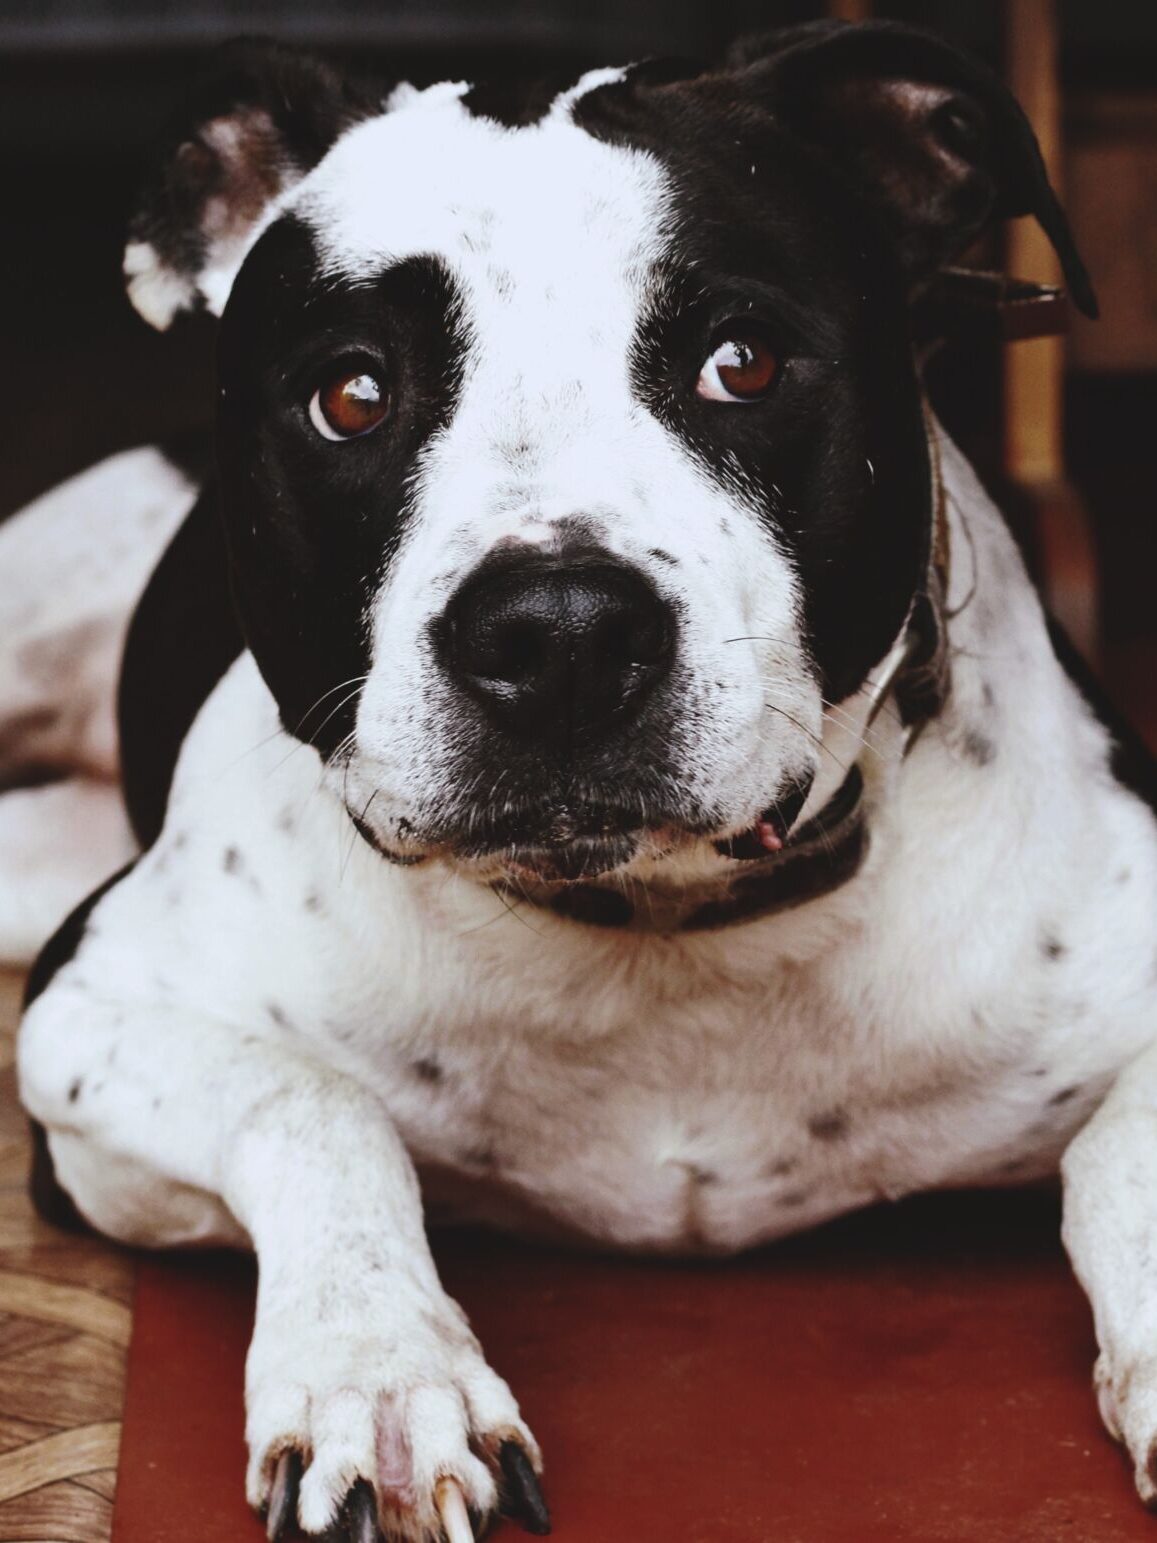 Canine Body Language - averted eyes